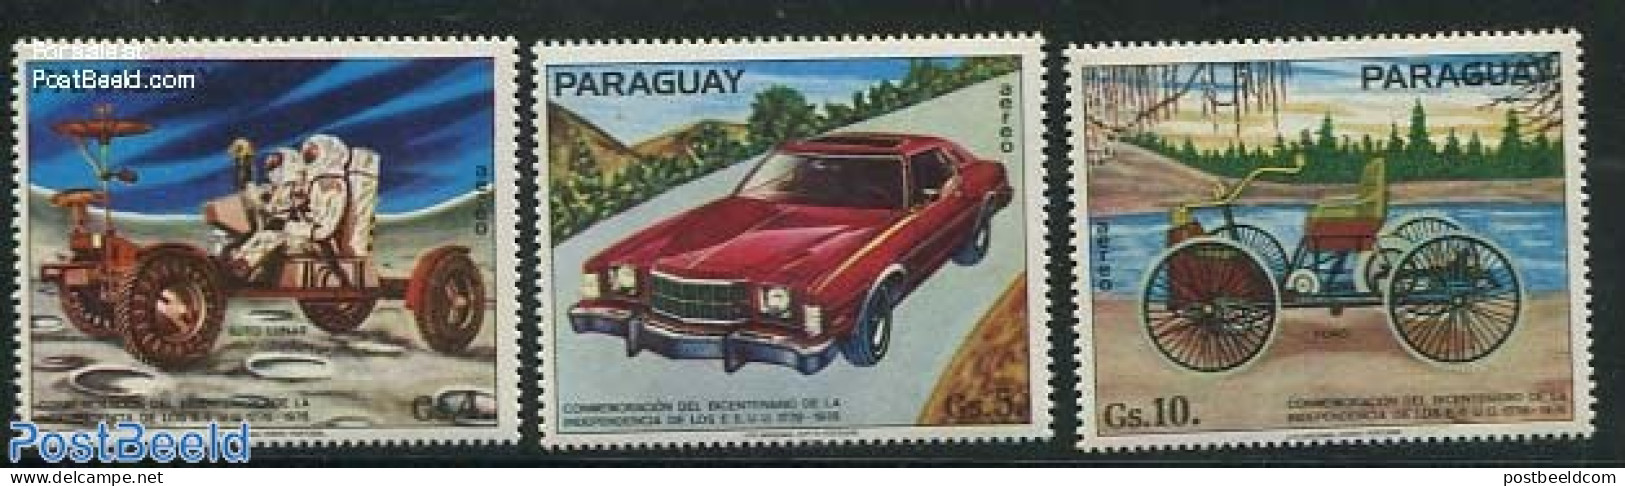 Paraguay 1975 Automobiles 3v, Mint NH, Transport - Automobiles - Space Exploration - Voitures